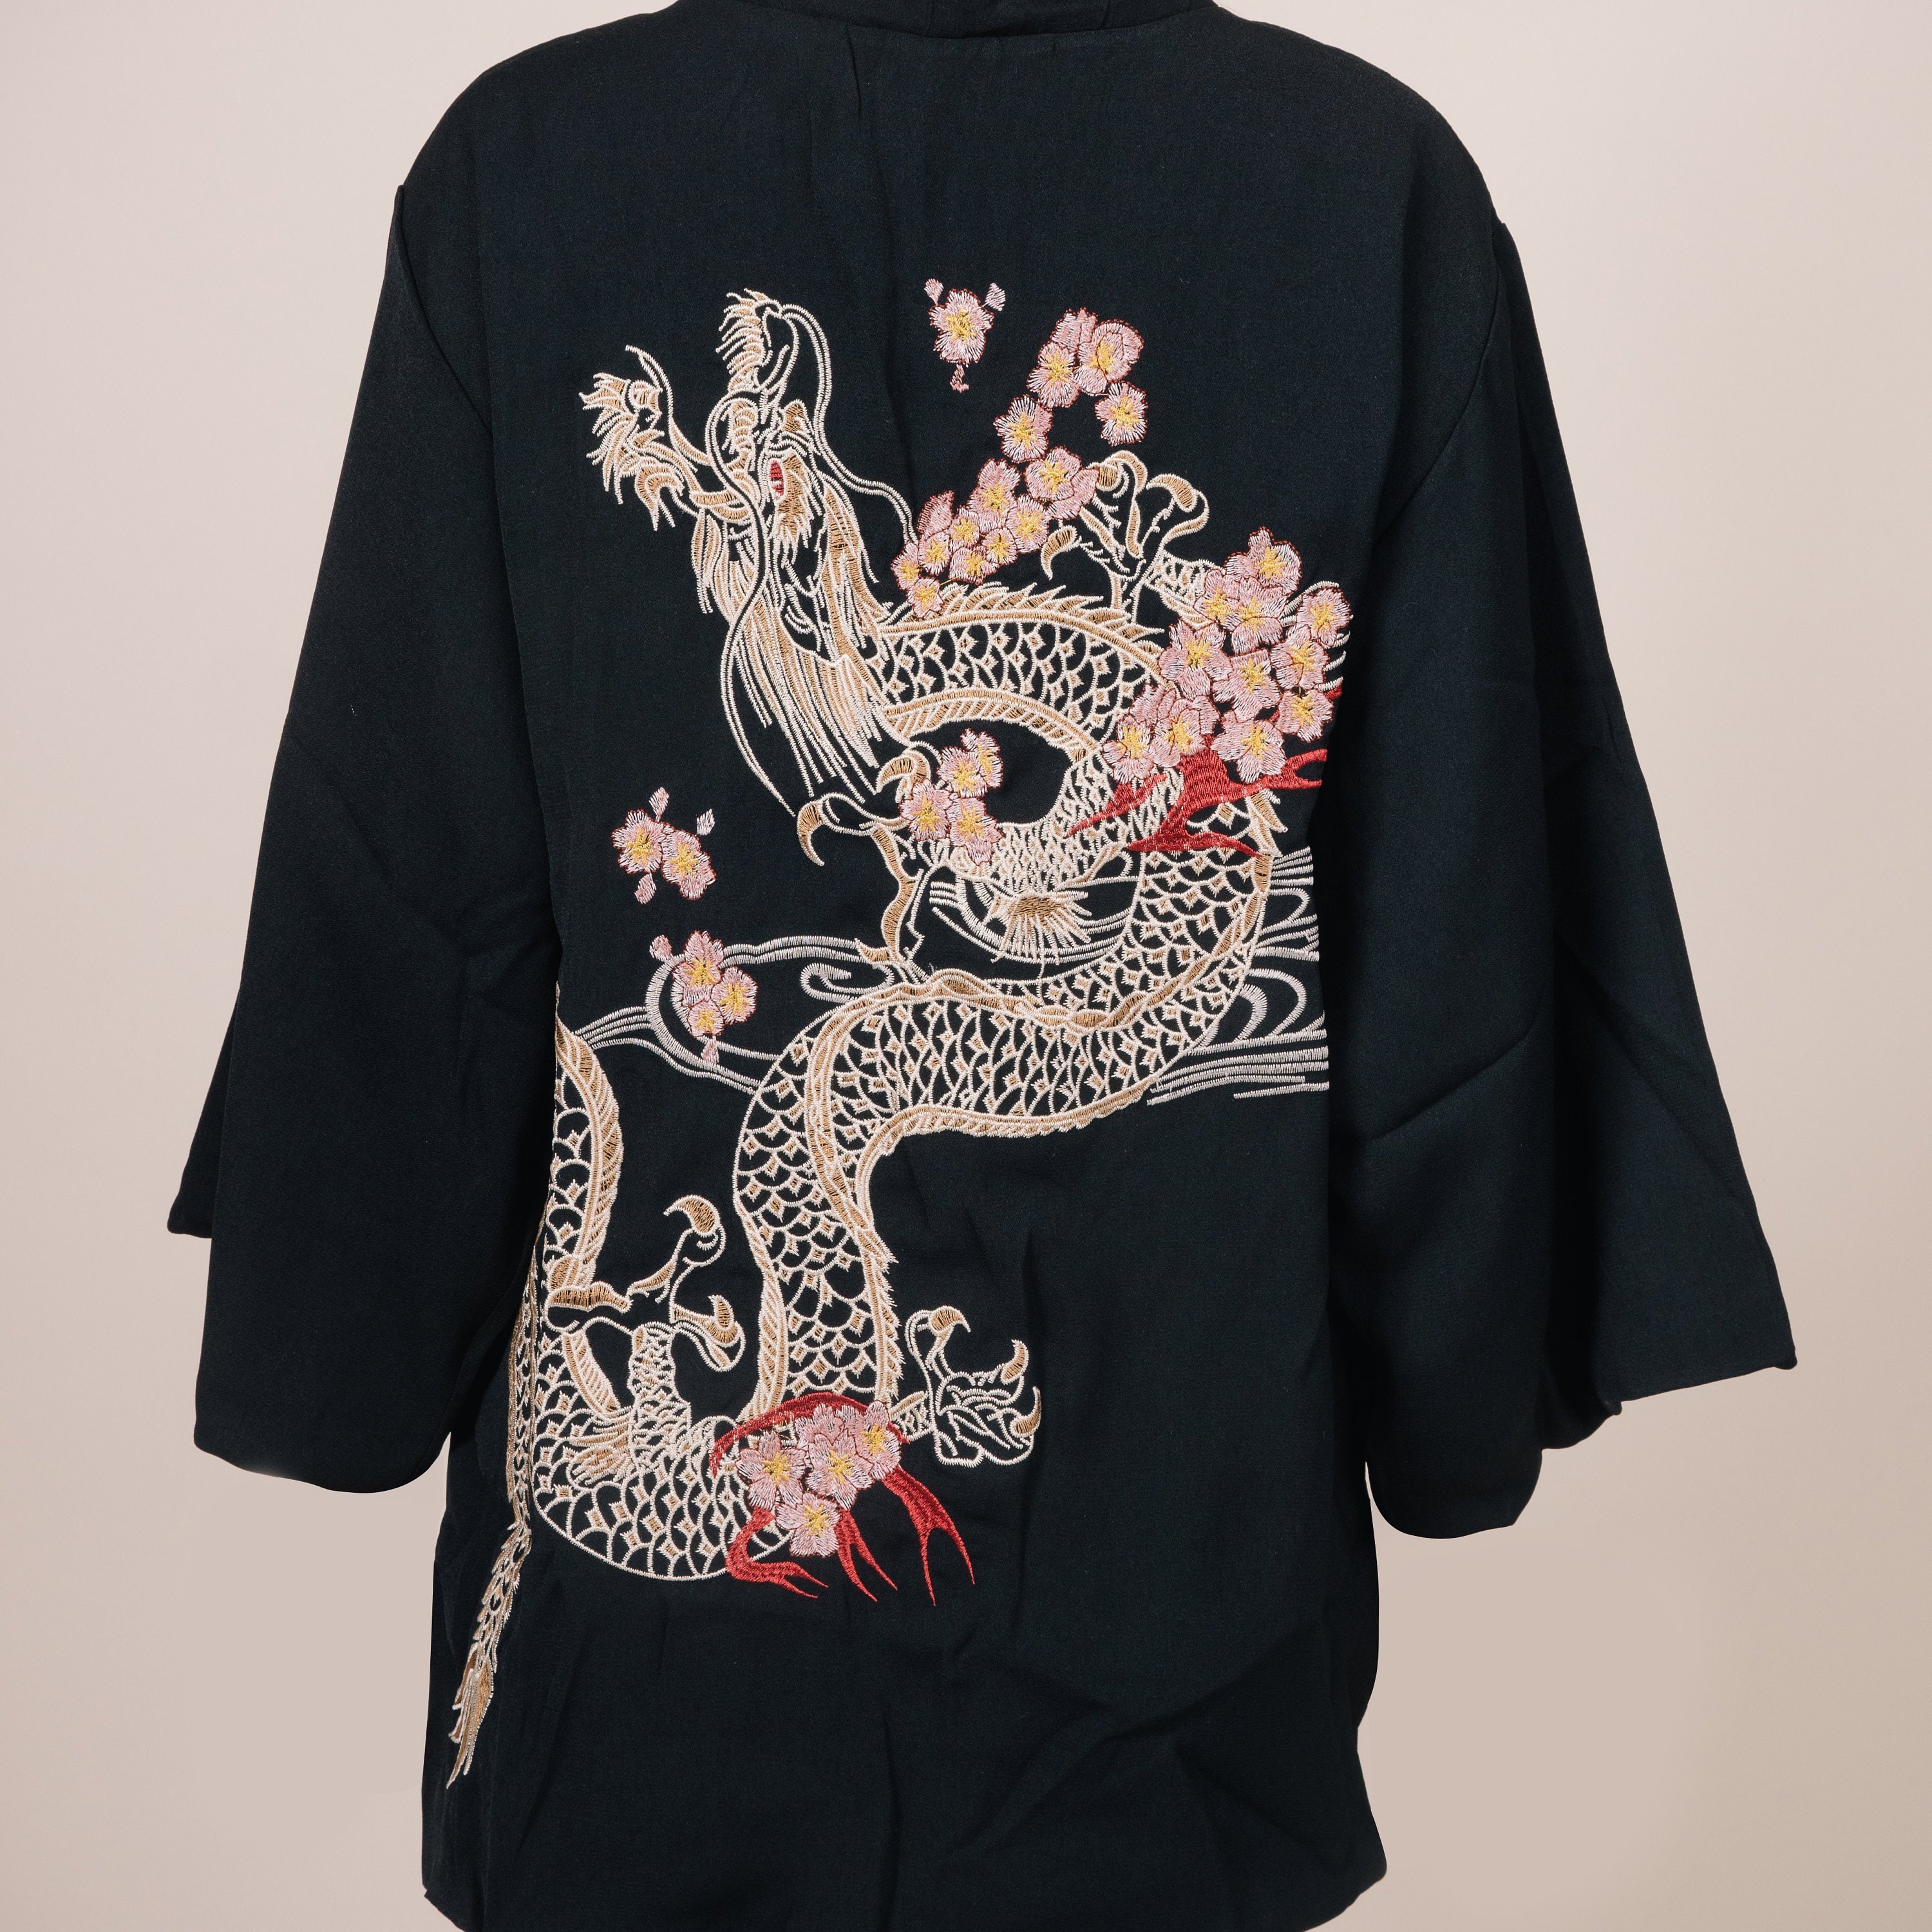 Embroidered Dragon Kimono/Kimono Robe/Japanese Gift/Embroidered Cardigan/Kimono Jacket/Unisex Kimono/Gift